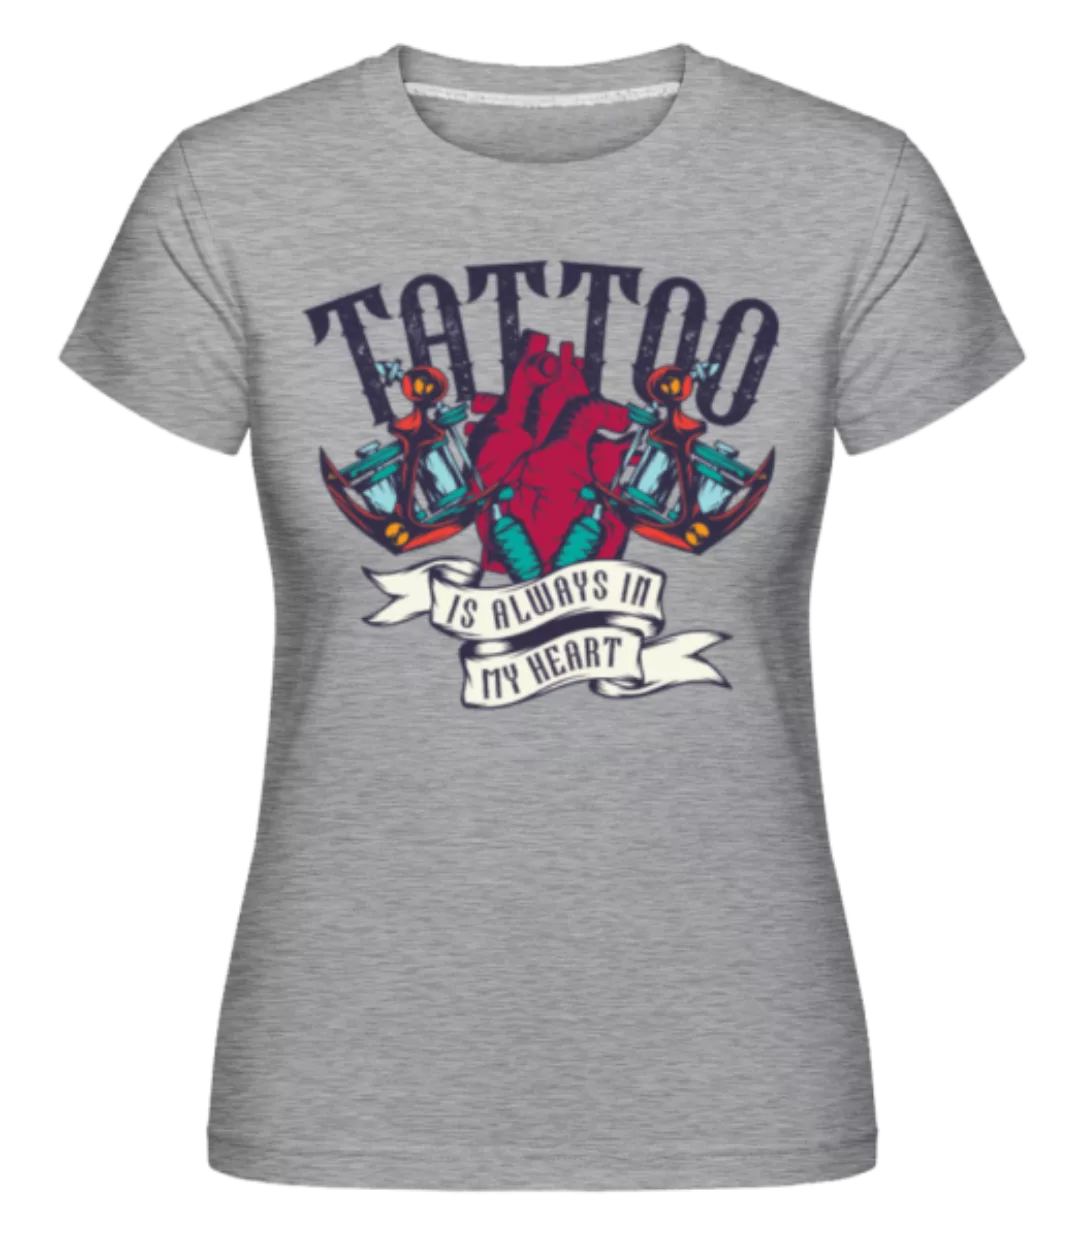 Tattoo Always In My Heart · Shirtinator Frauen T-Shirt günstig online kaufen